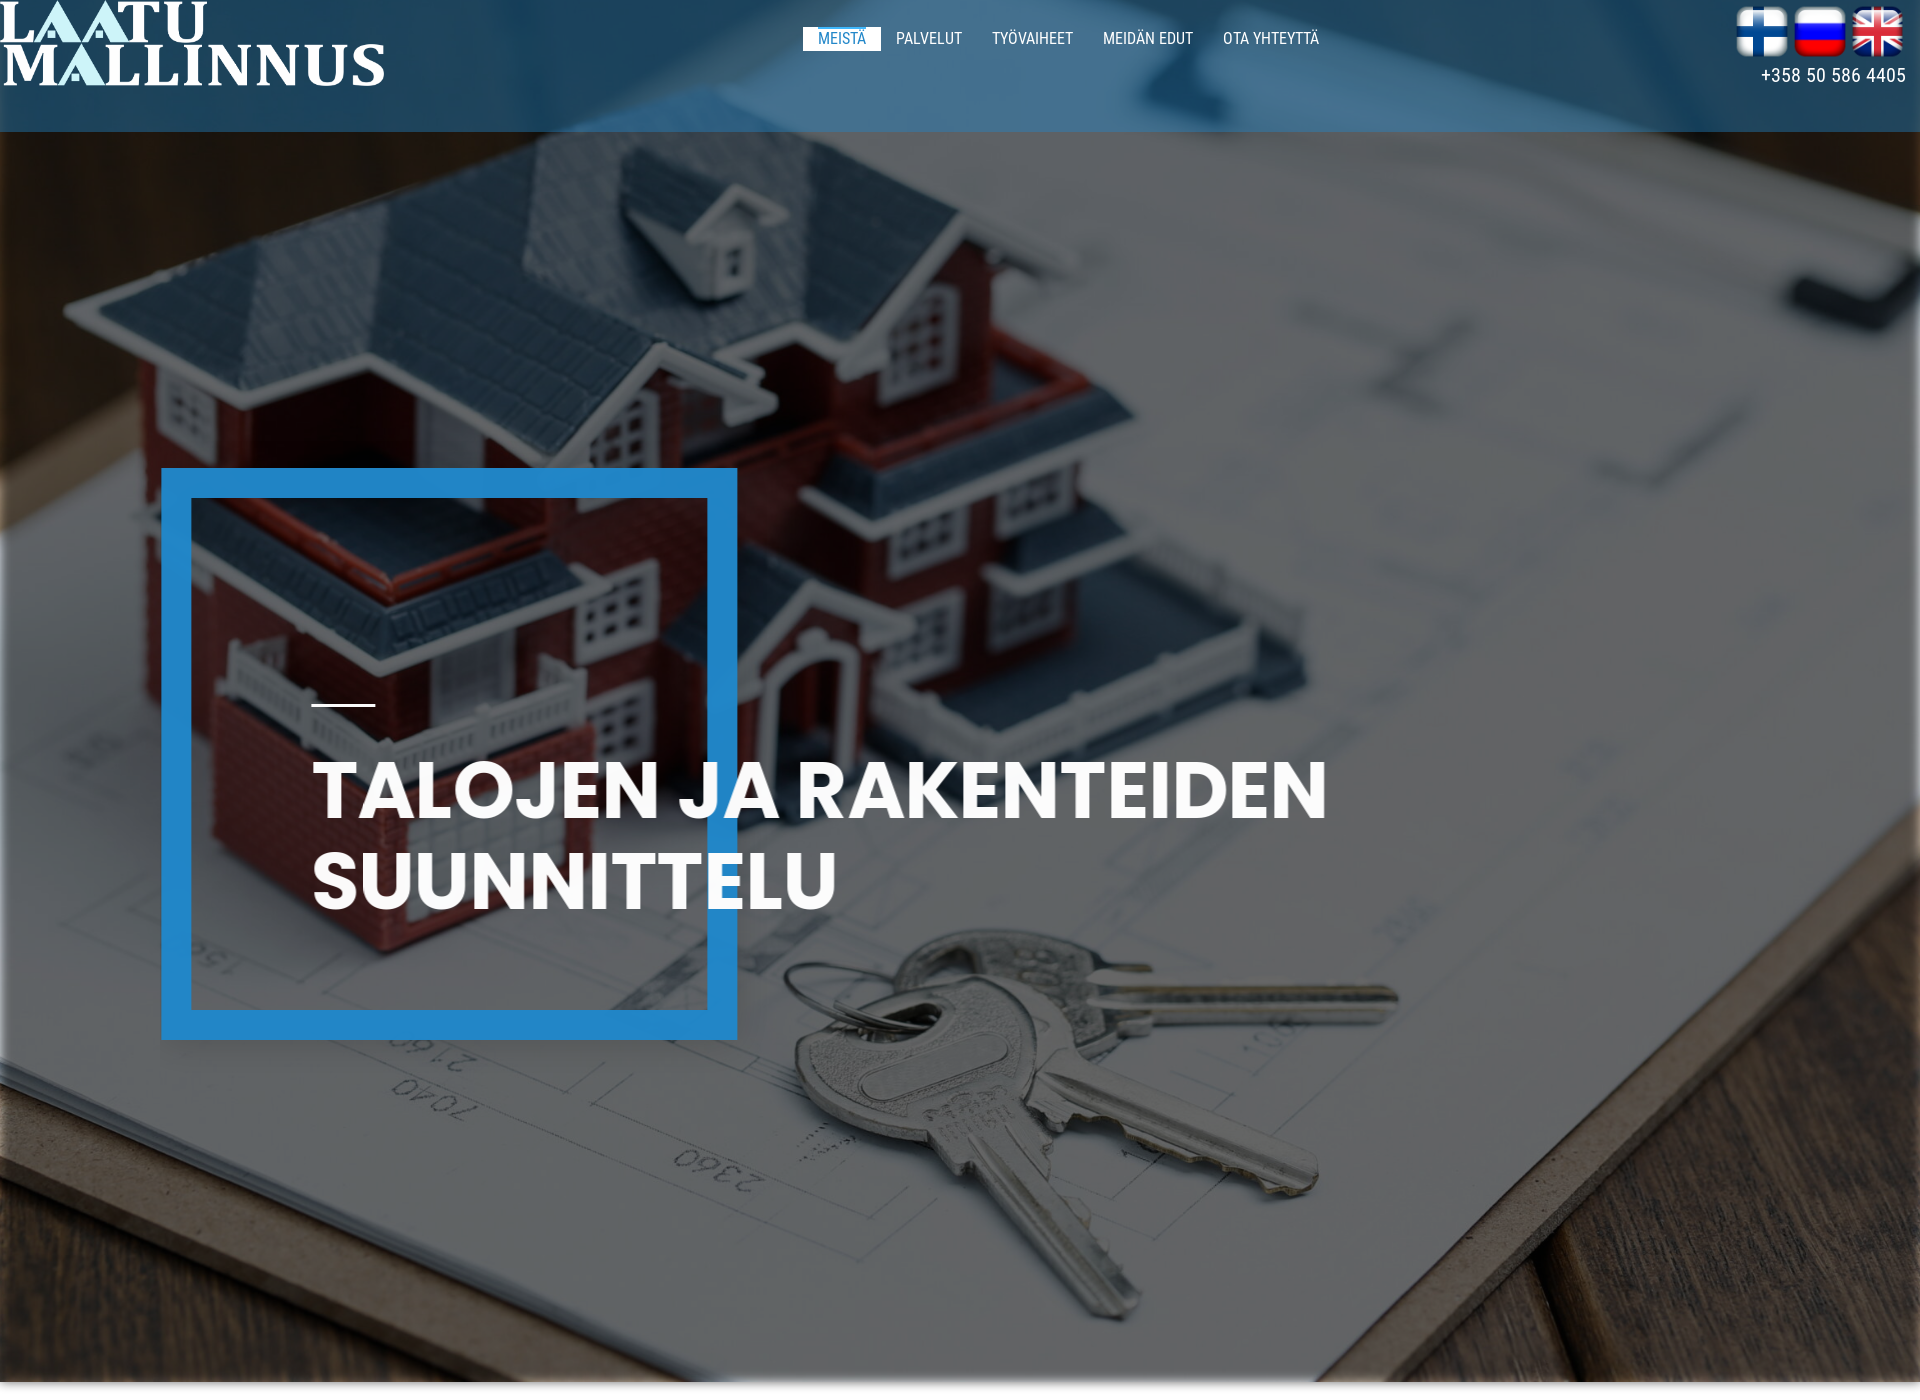 Skärmdump för laatumallinnus.fi